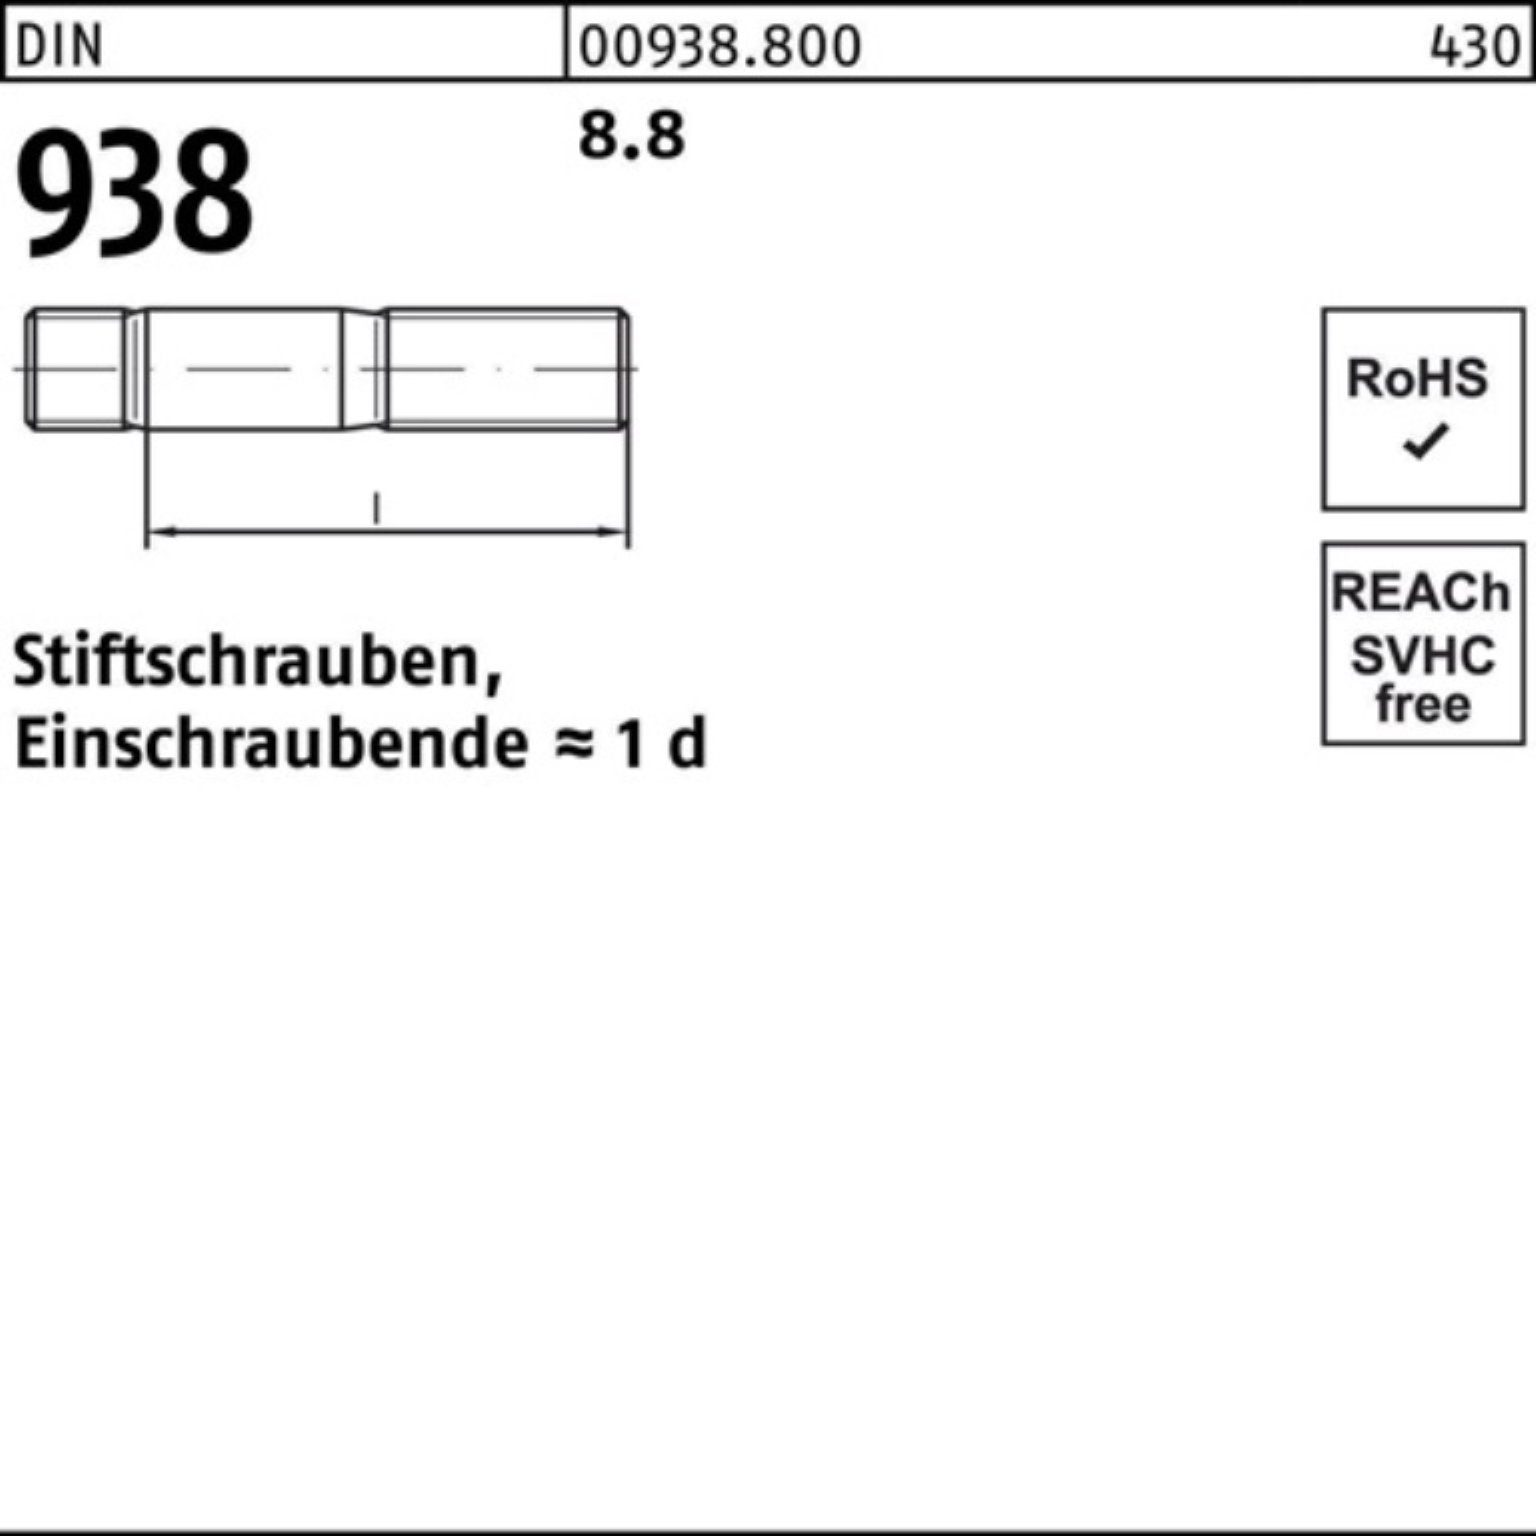 Reyher Stiftschraube 100er Pack Stiftschraube M8x 938 DIN 50 25 938 8.8 Stück Stif 8.8 DIN